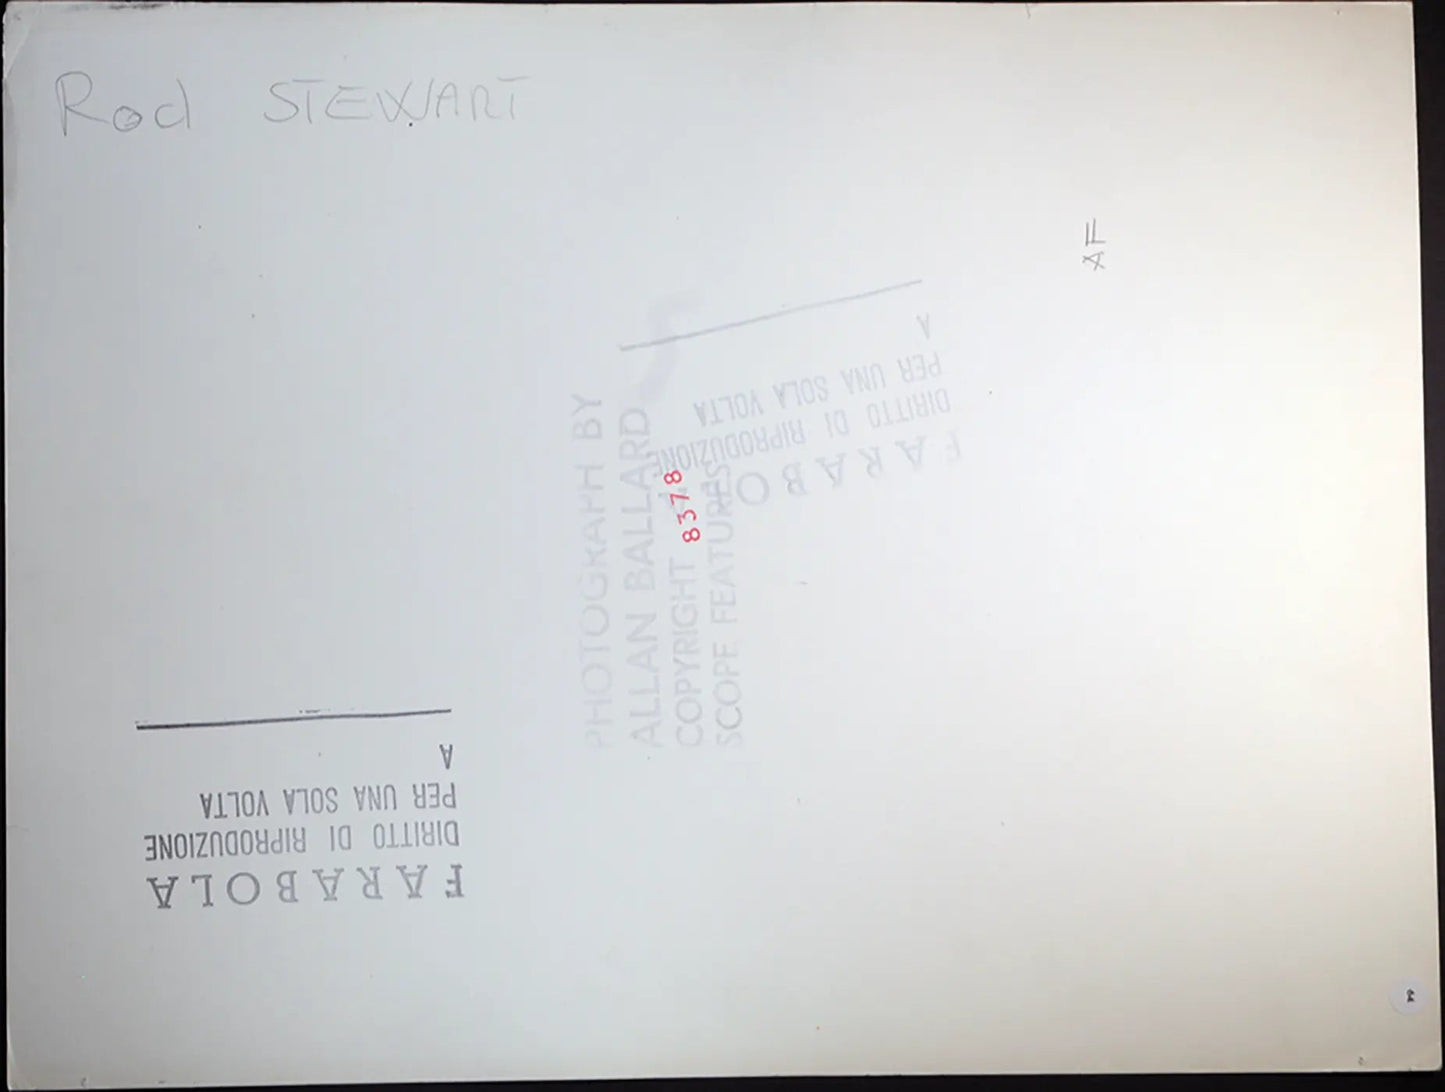 Rod Stewart si fa un massaggio Ft 64 - Stampa 27x37 cm - Farabola Stampa ai sali d'argento